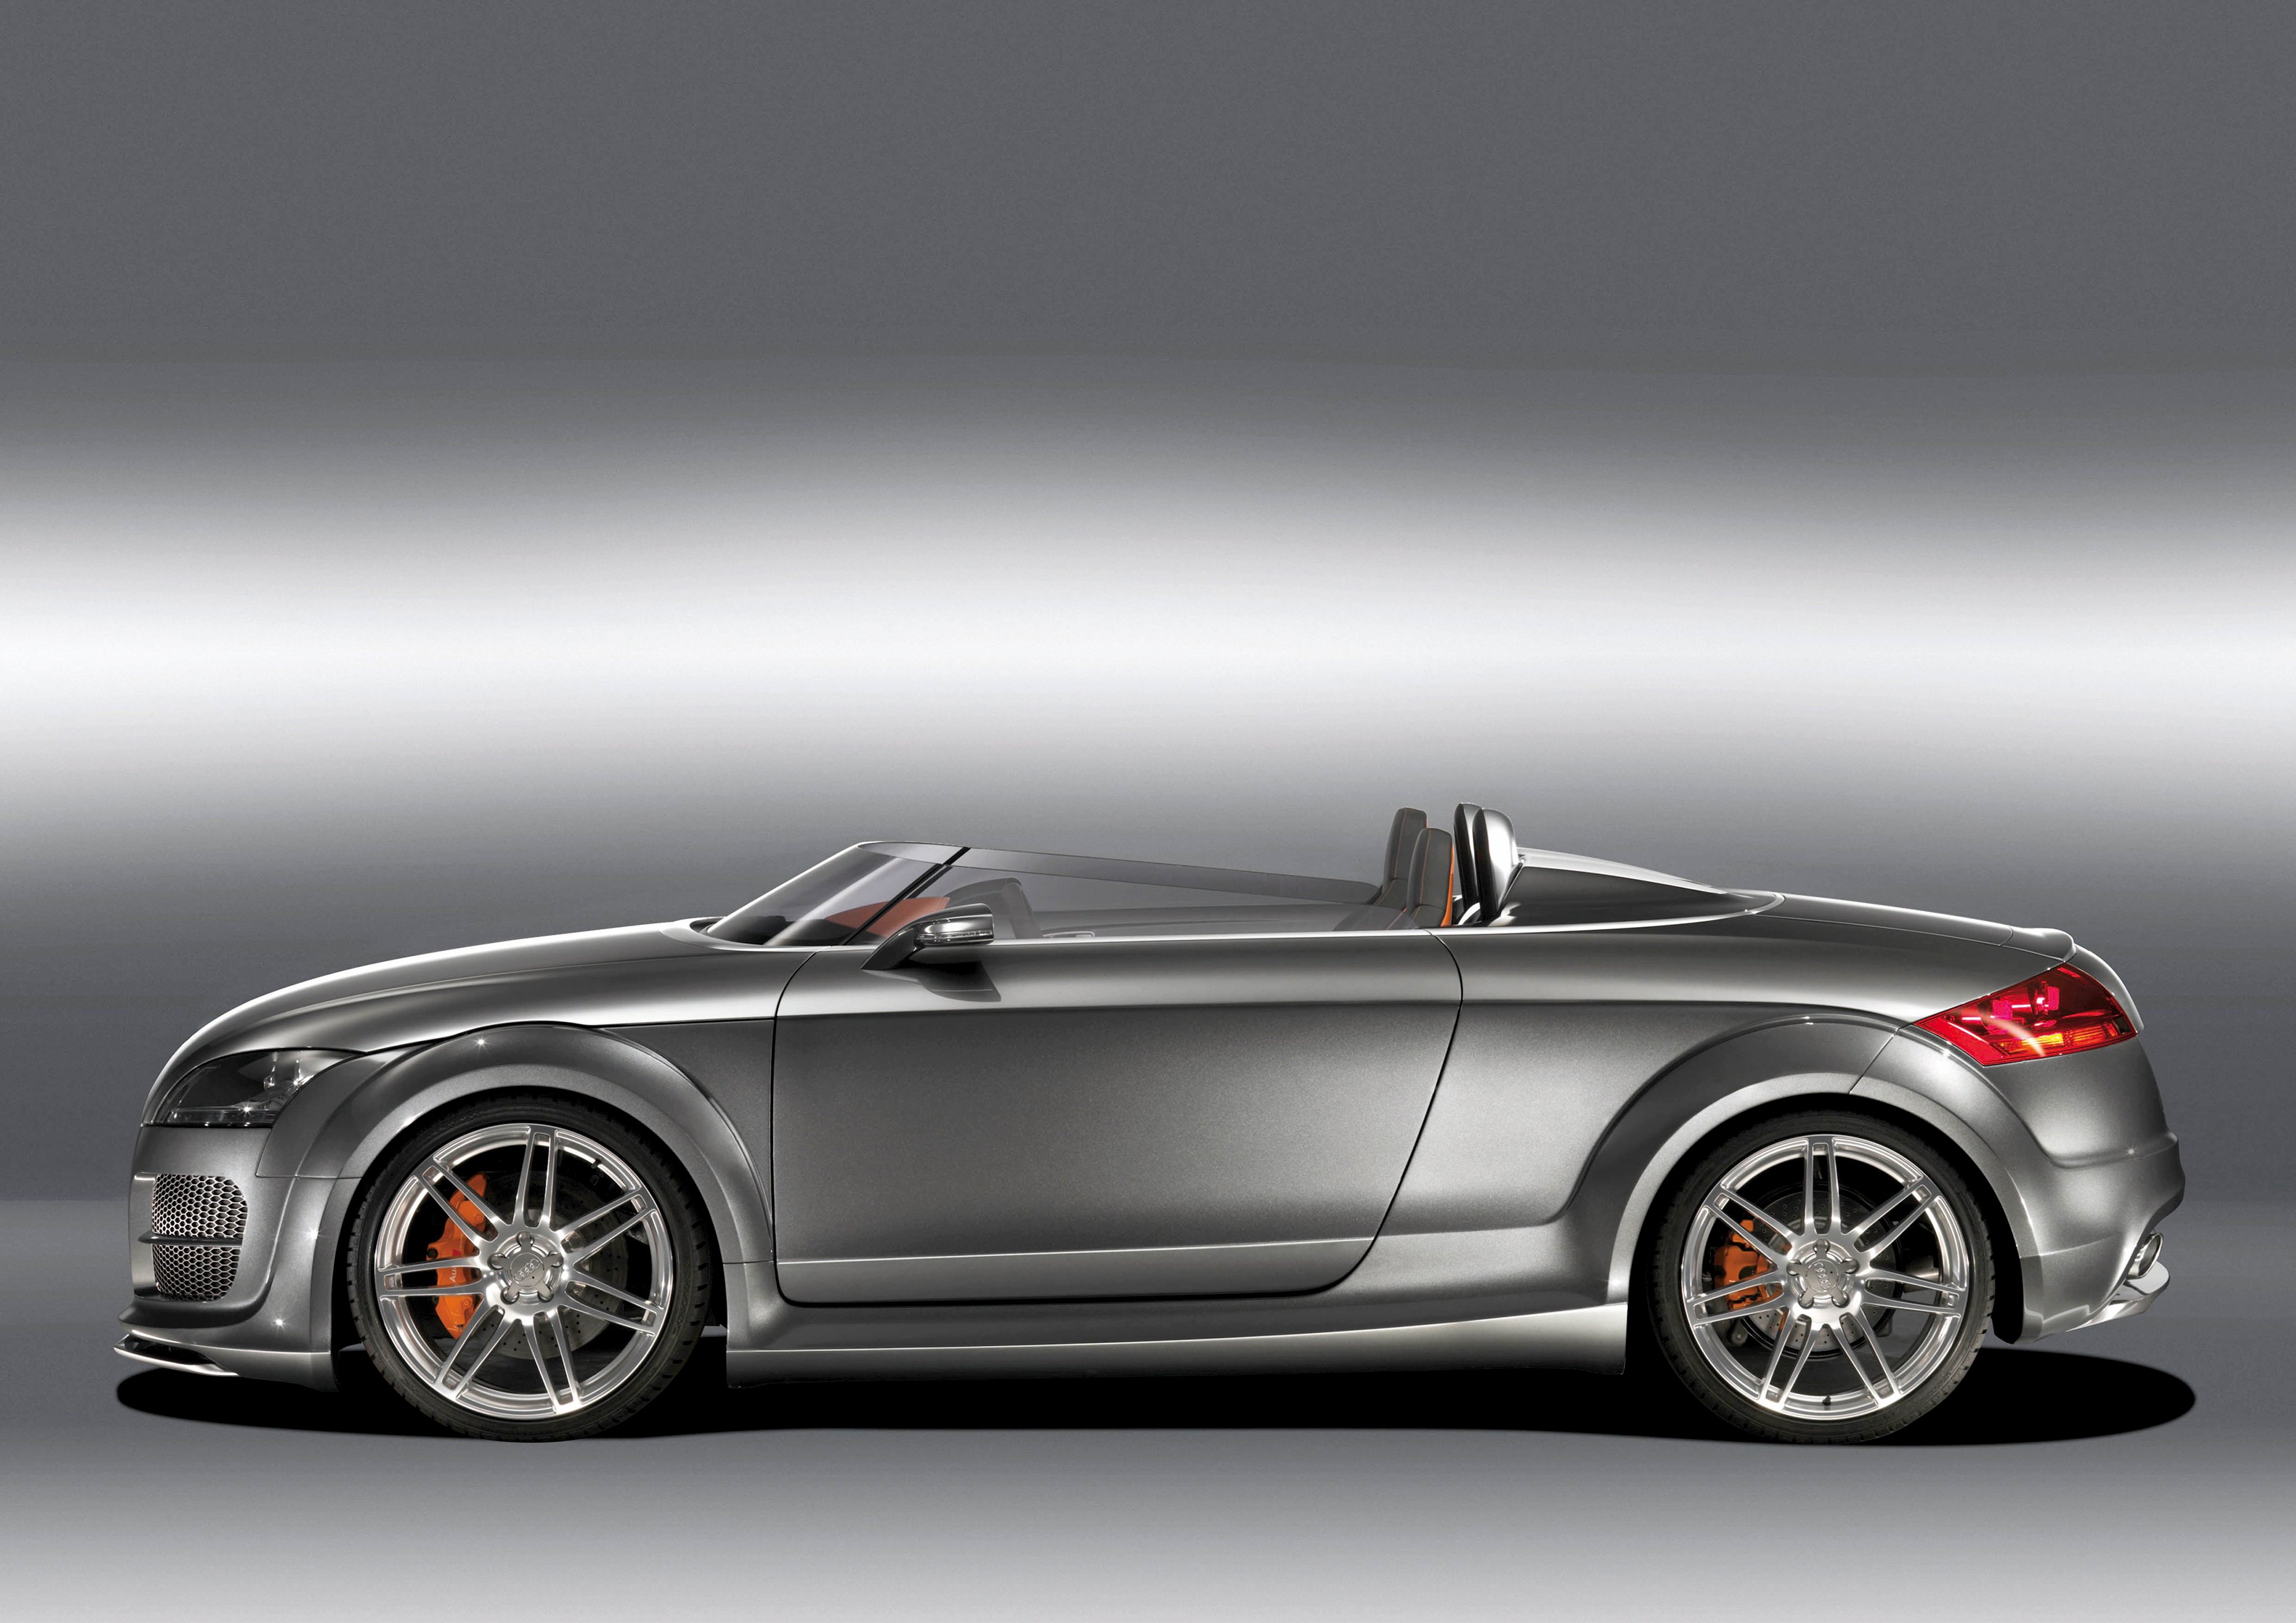 2007, Audi, T t, Clubsport, Quattro, Concept, 8 j Wallpaper